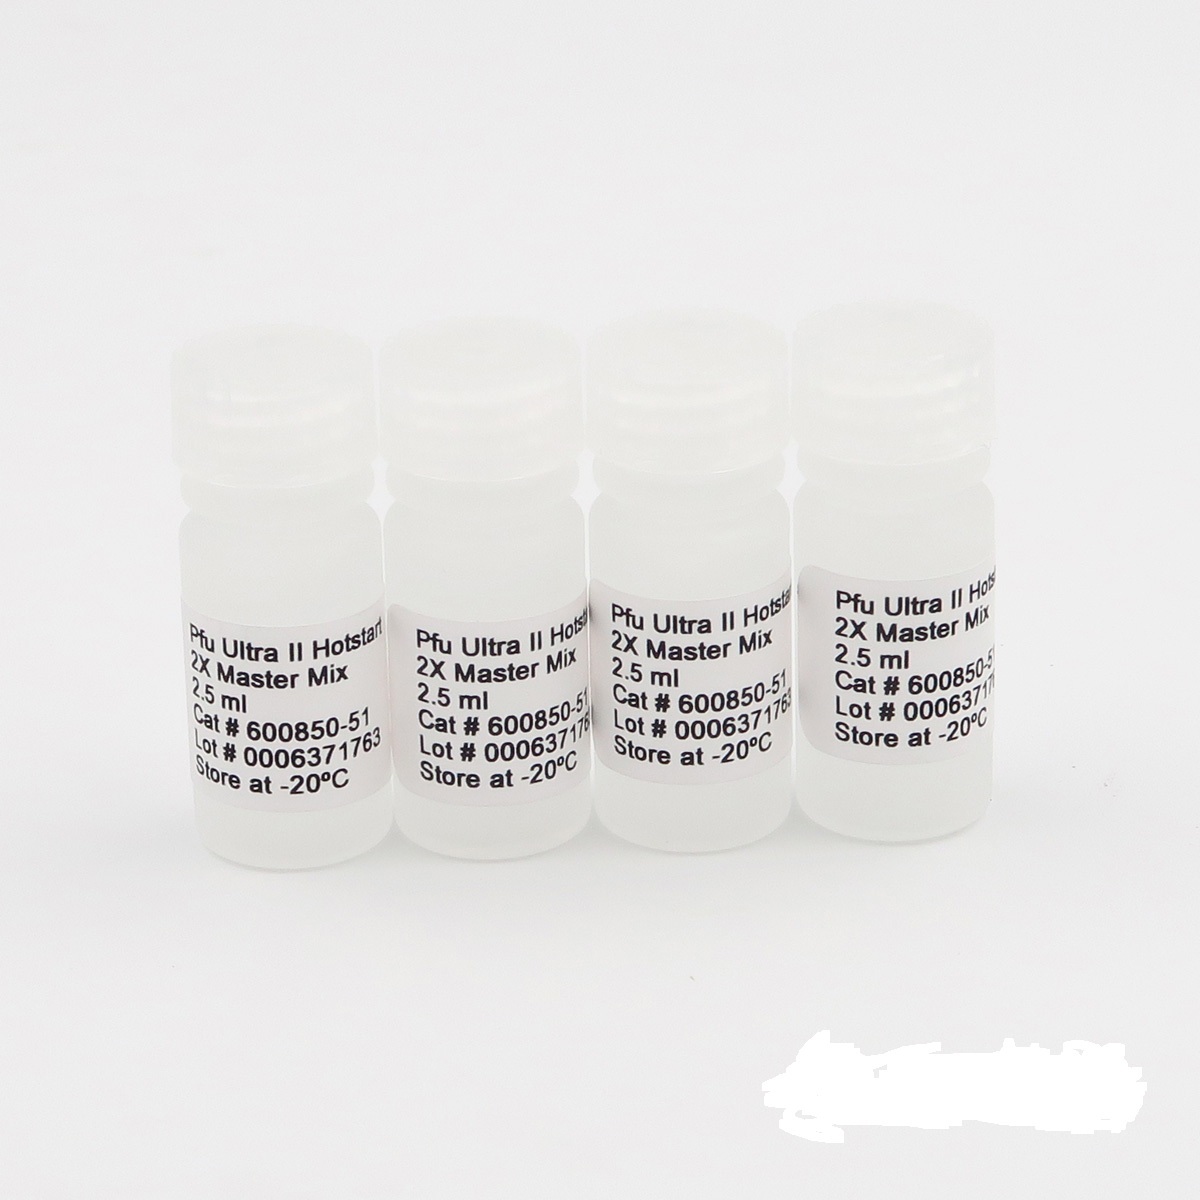 番鸭细小病毒染料法荧光定量PCR试剂盒